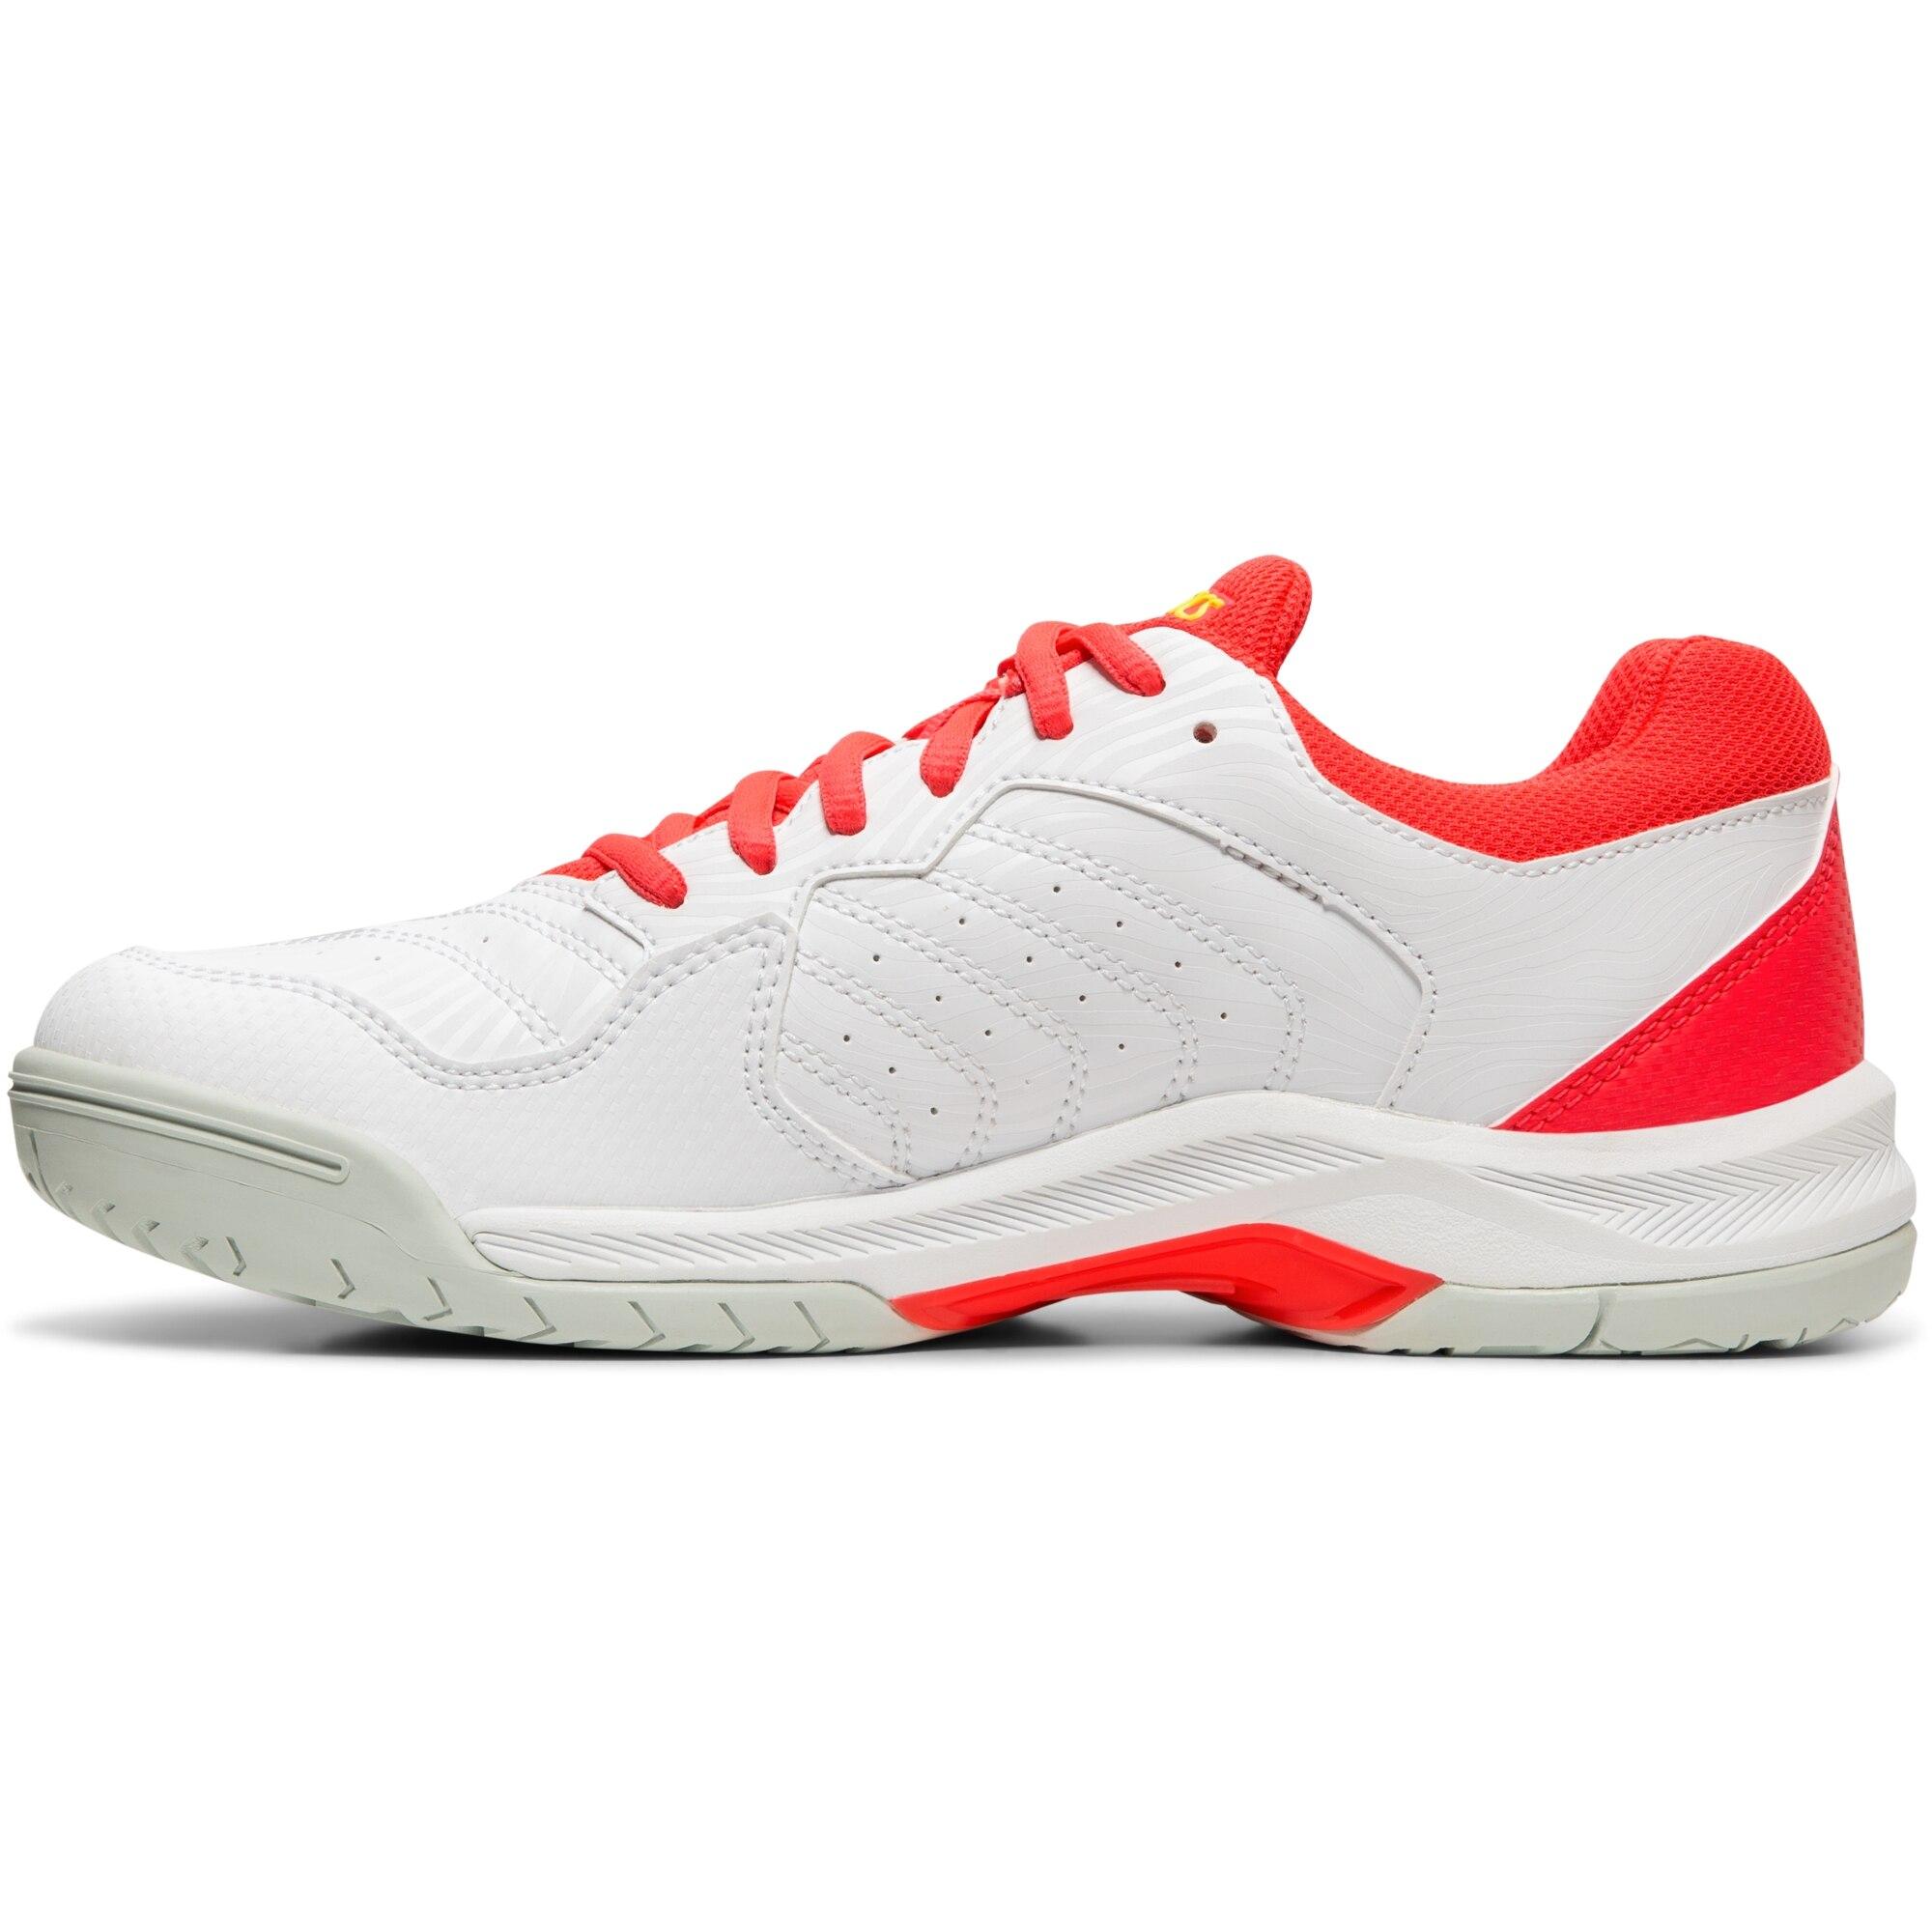 Asics Womens GEL-Dedicate 6 Tennis Shoes - White/Laser Pink ...